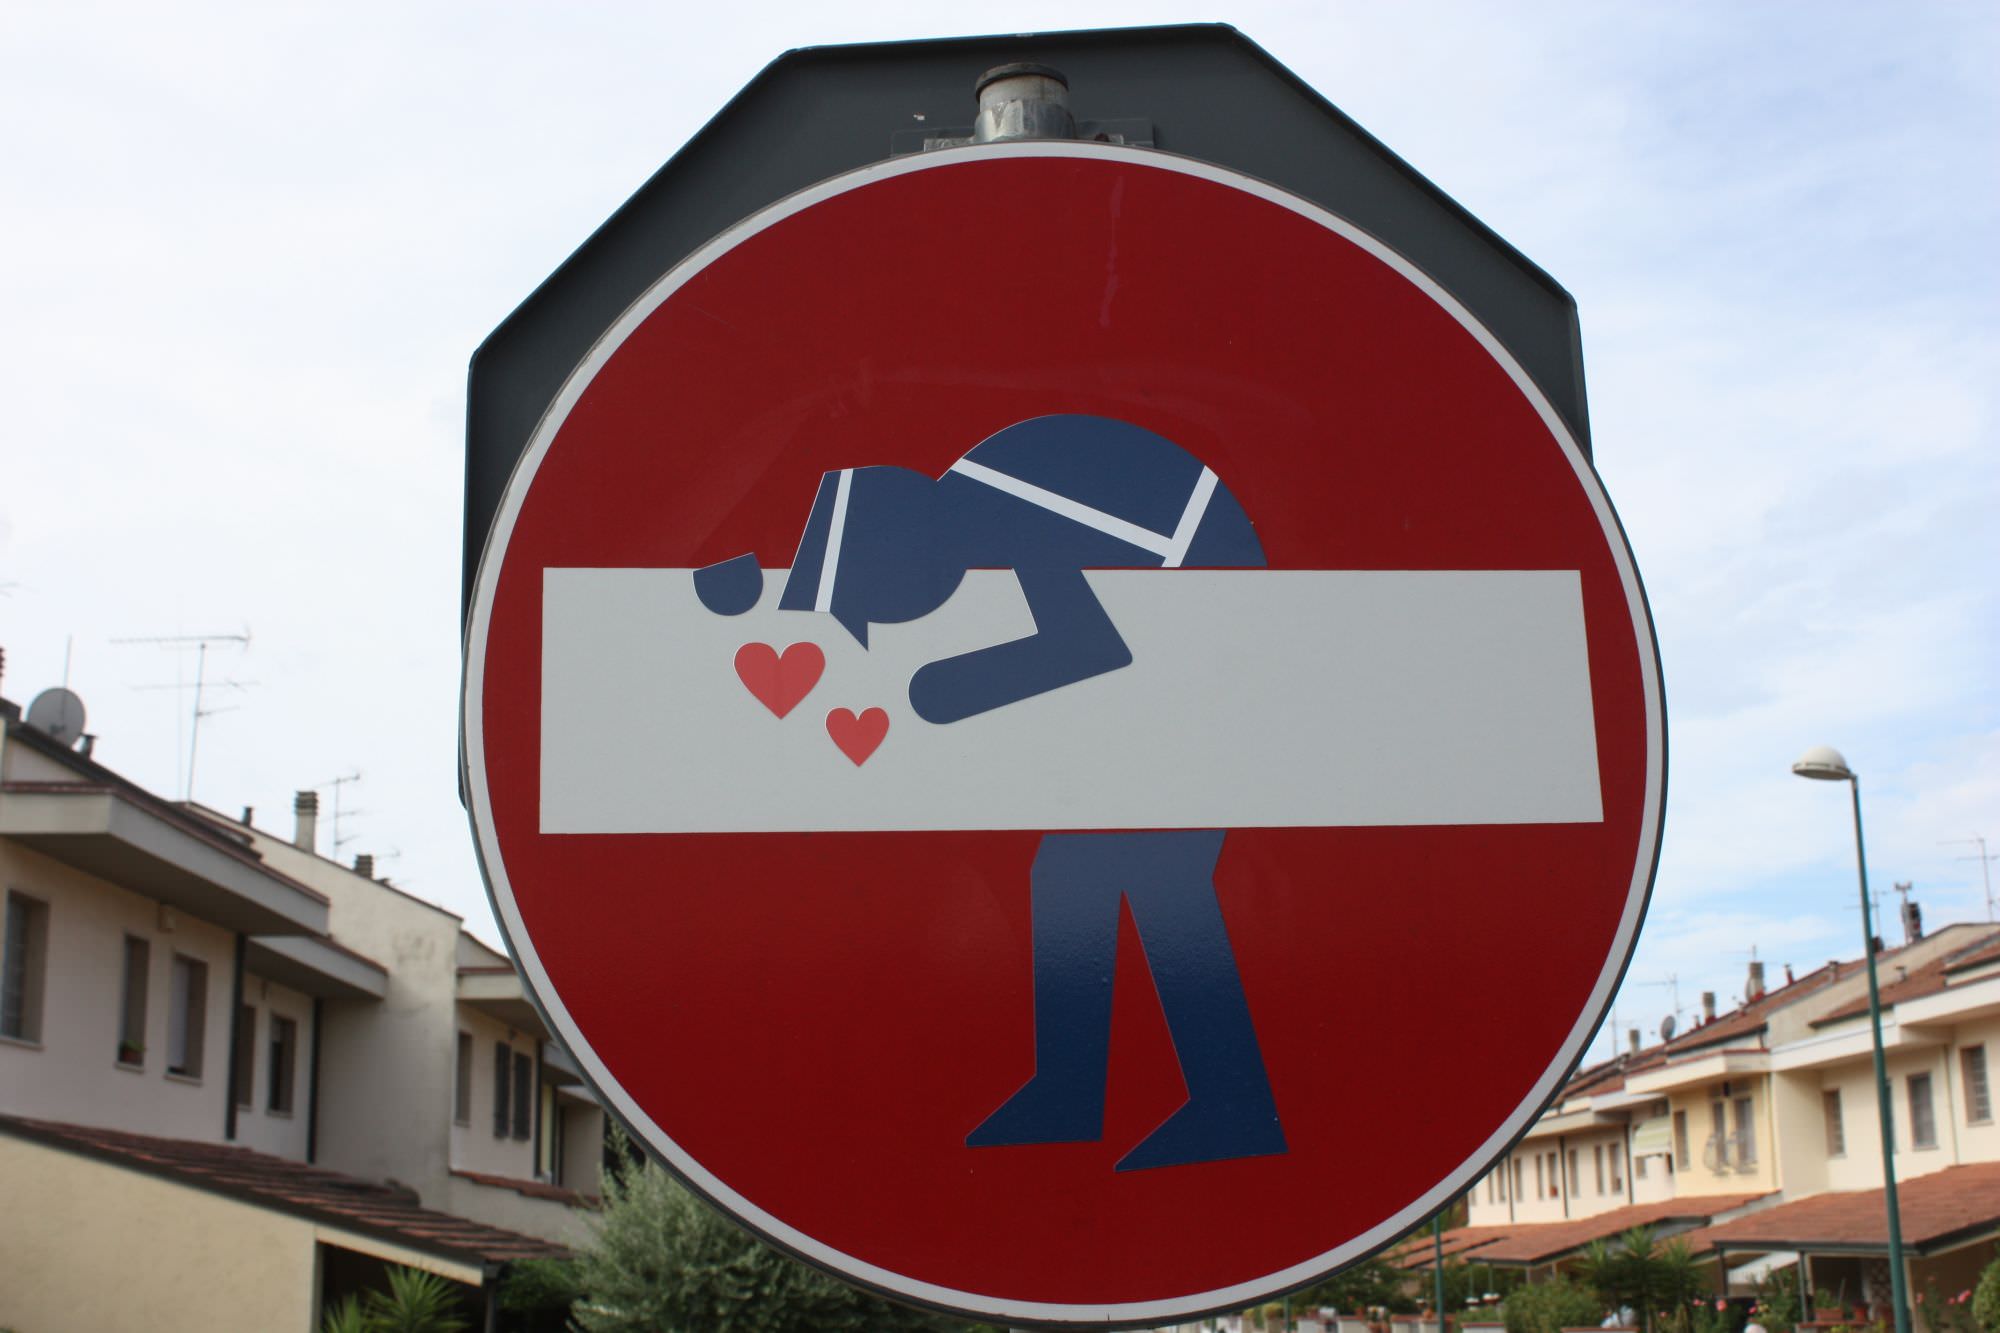 La street art di Clet Abraham sbarca anche in Versilia: i cartelli stradali prendono vita